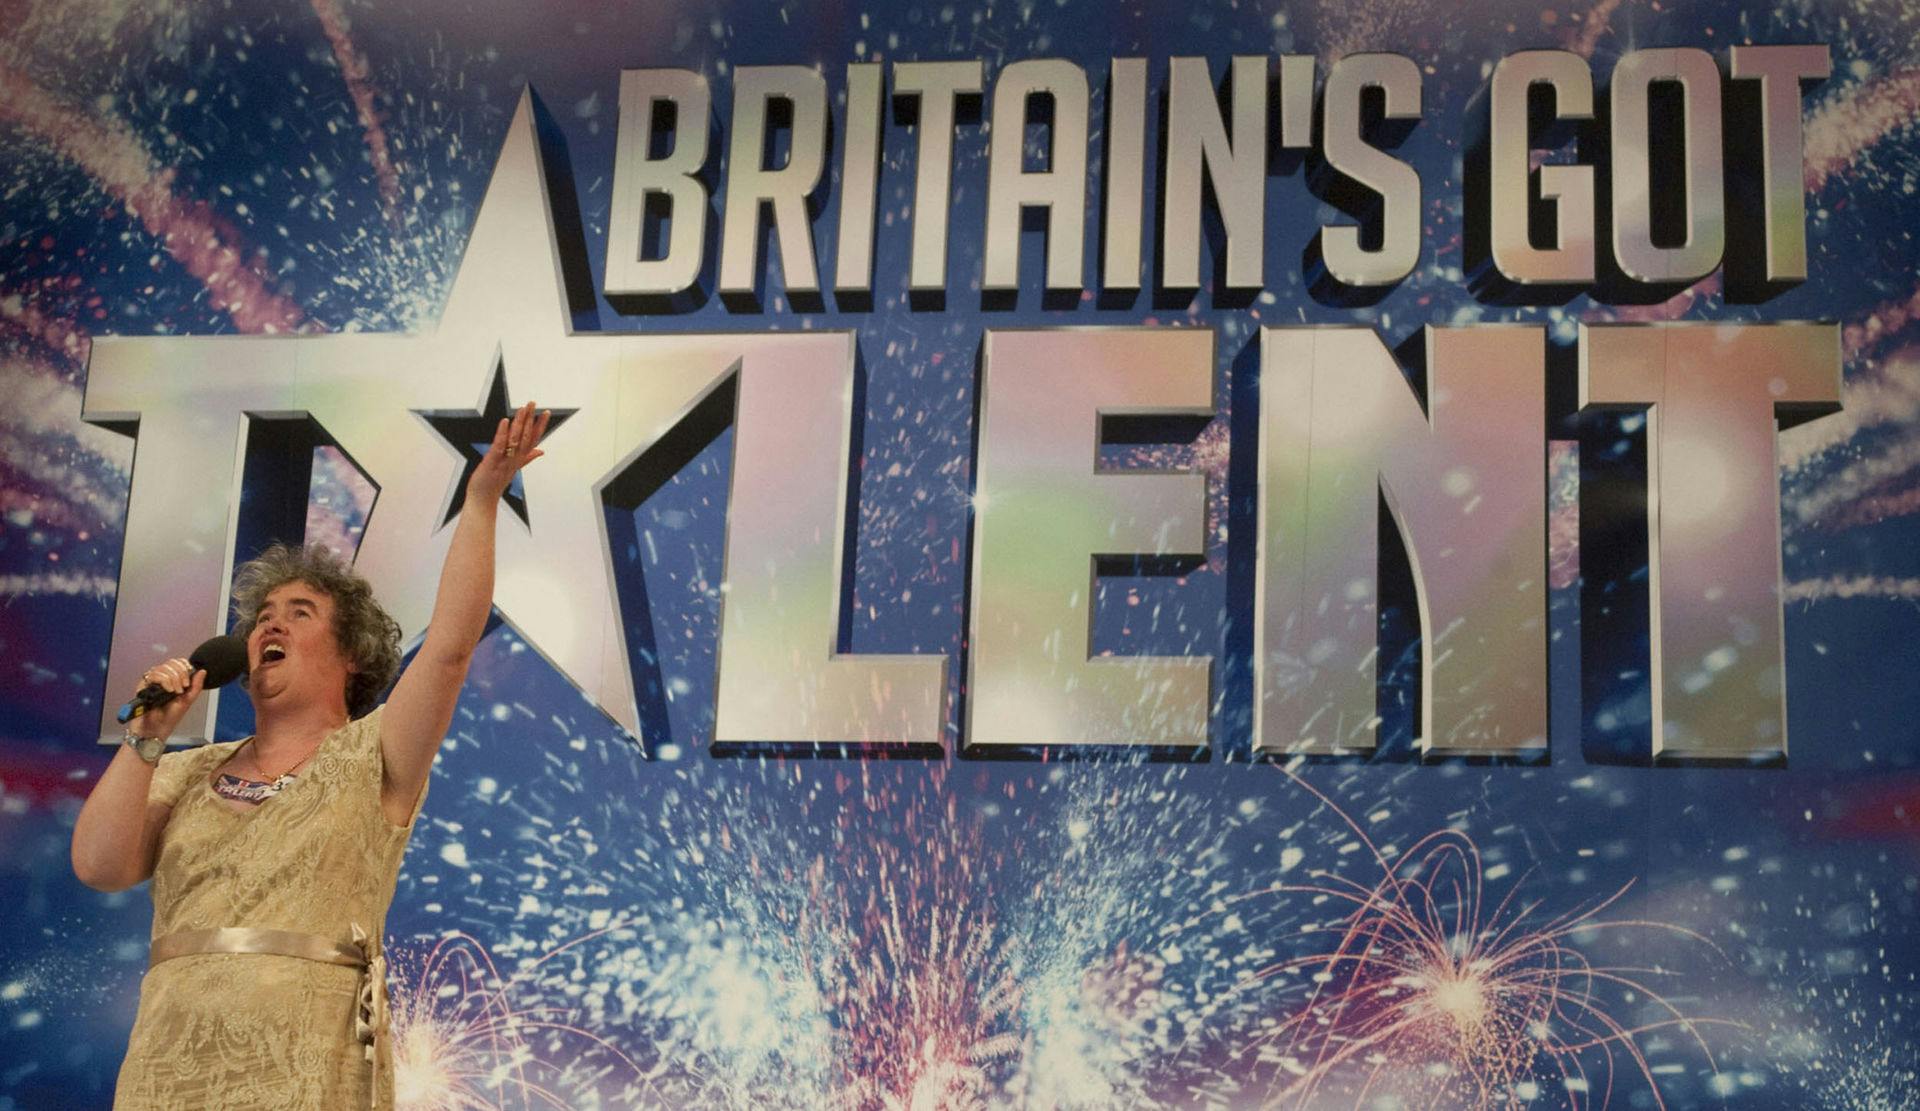 Sådan så det ud, da Susan Boyle dukkede op i "Britain's Got Talent" tilbage i 2009.